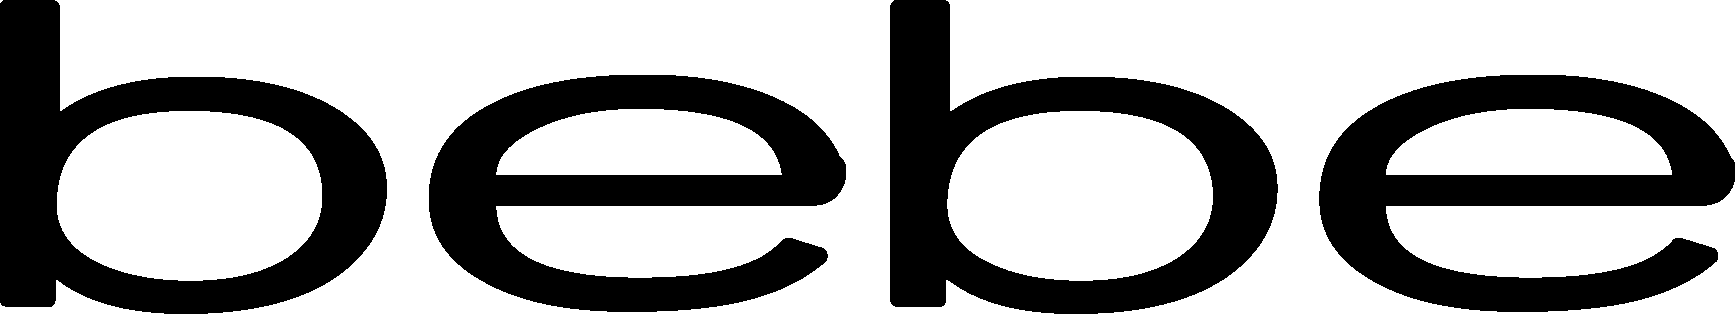 Bebe Logo Download Vector